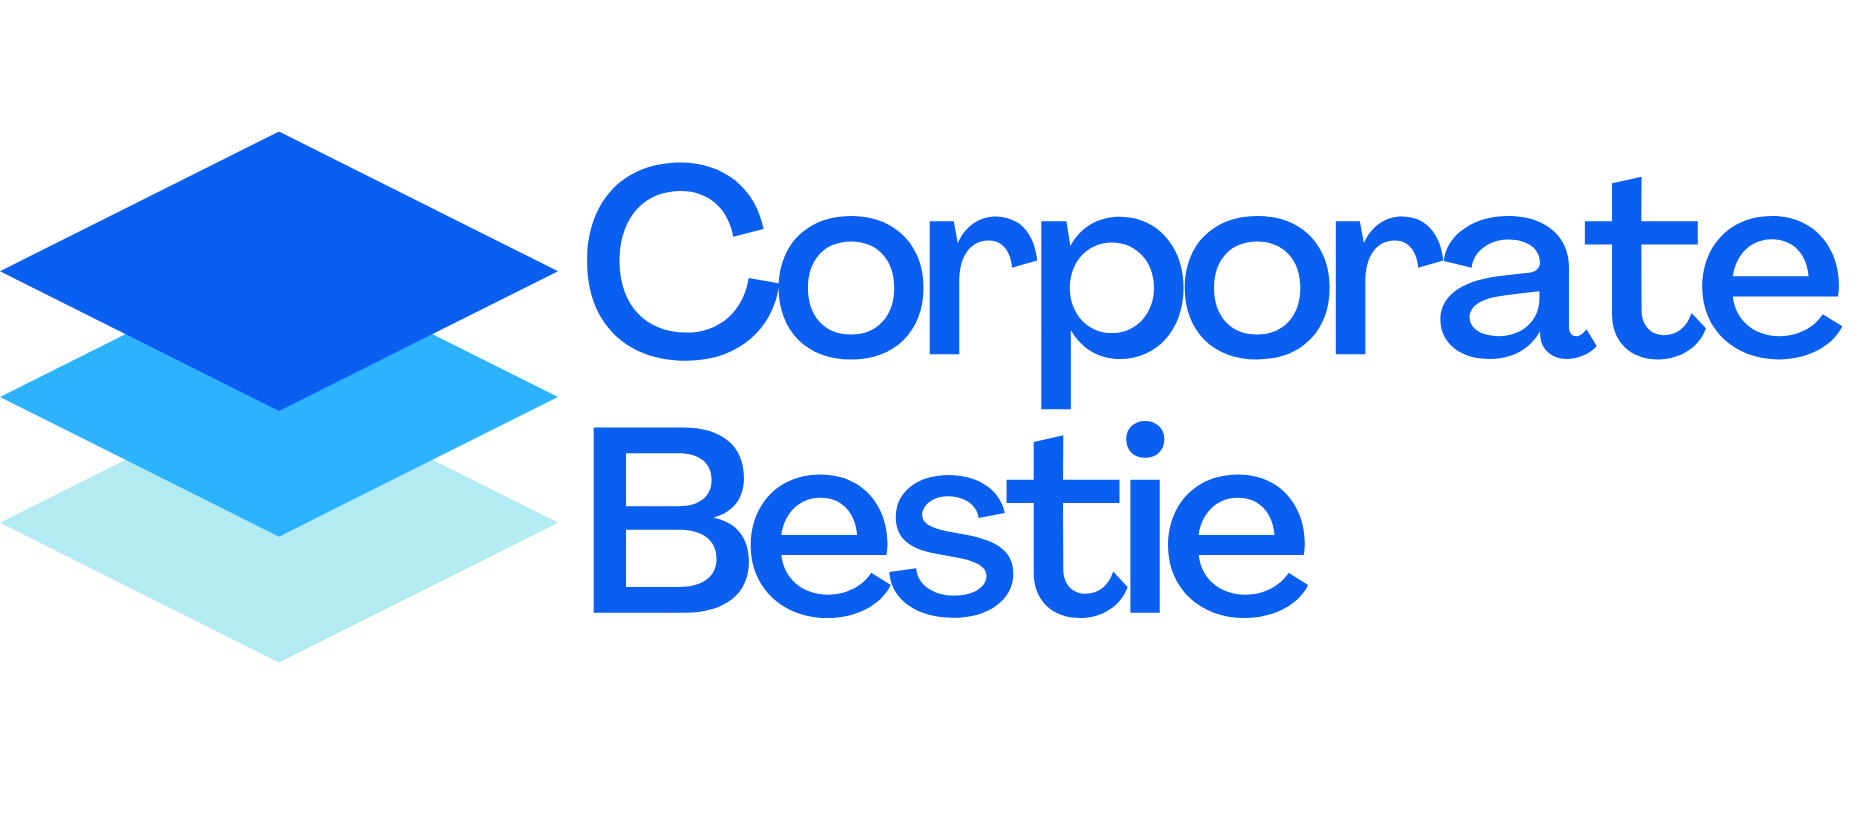 Corporate Bestie